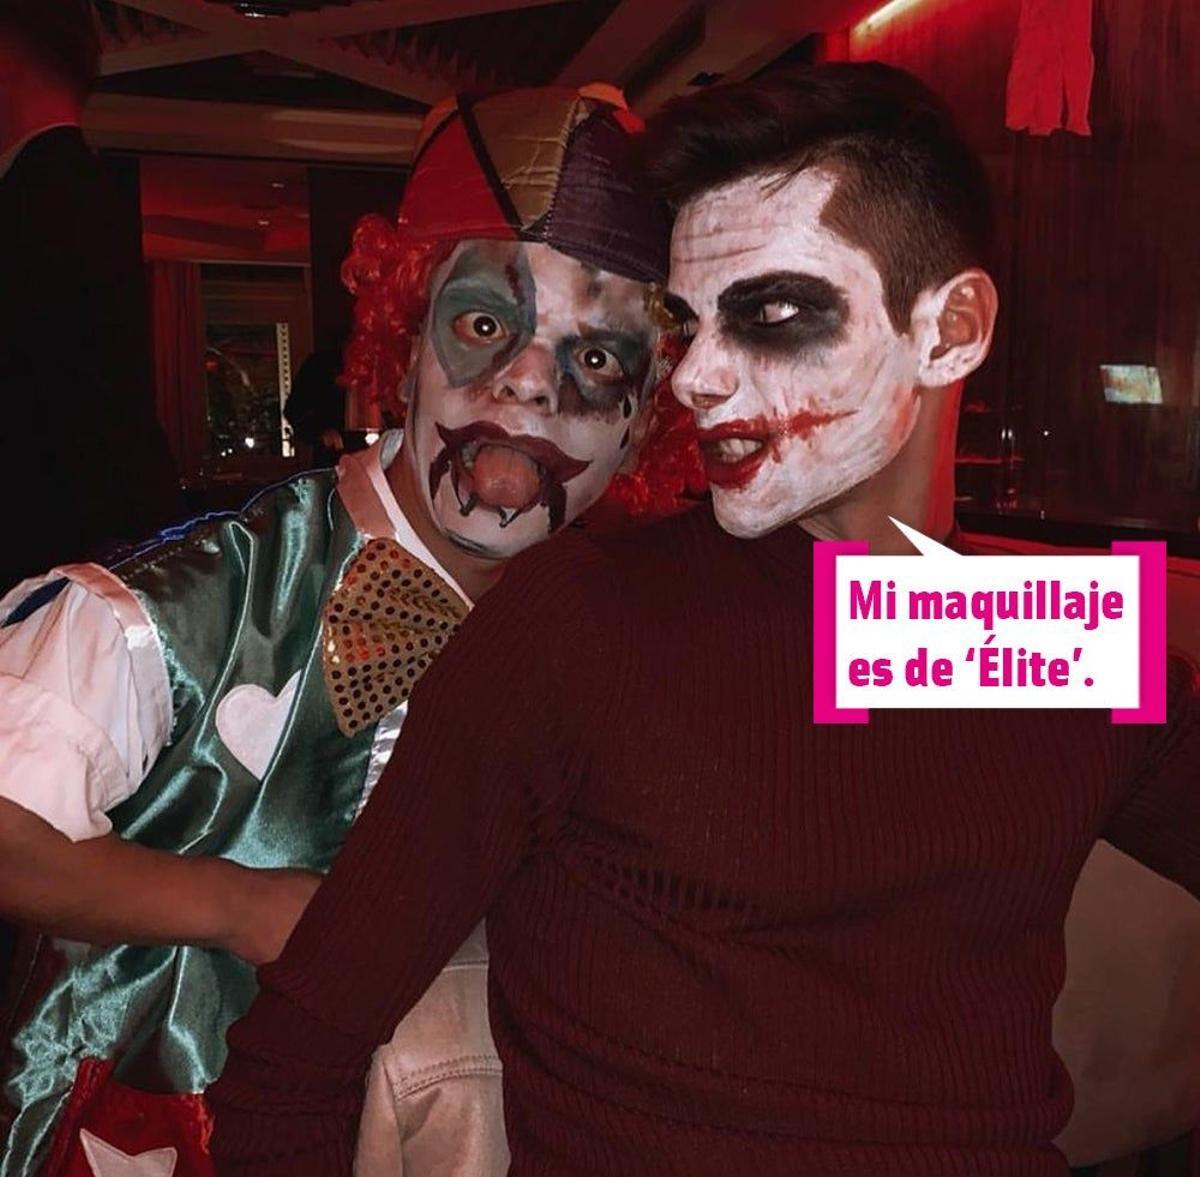 Esto es Halloween: los maquillajes de 'Élite' de Ester Expósito y Álvaro  Rico - Cuore